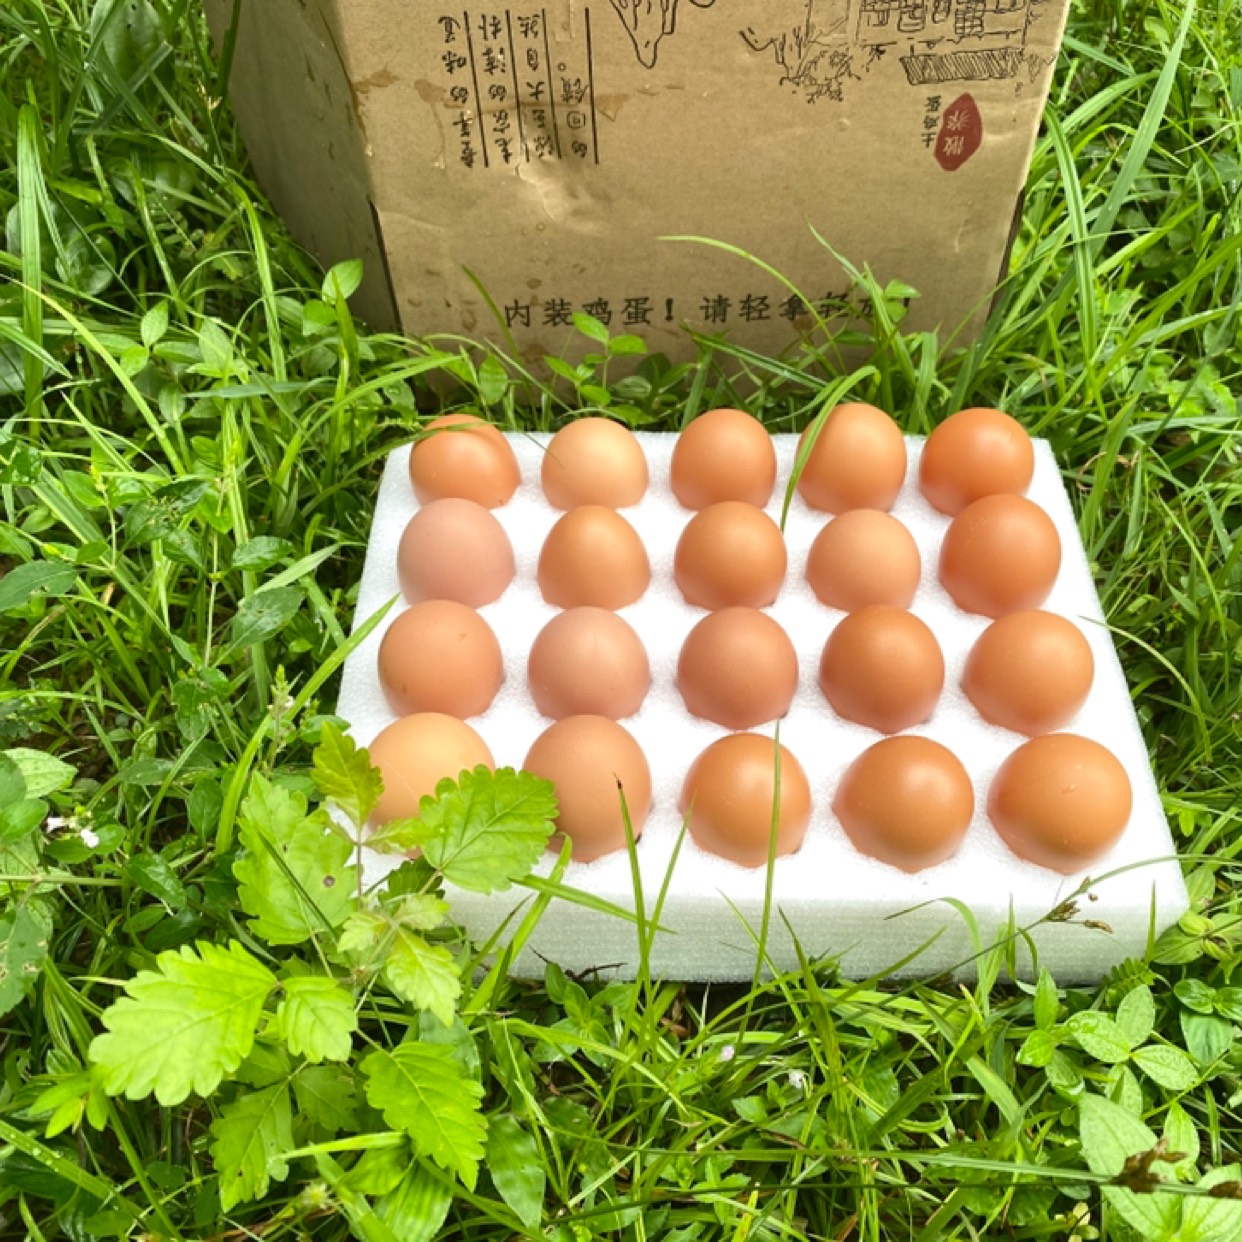 [粉壳蛋批发]红皮鸡蛋 新品礼盒装20枚,40枚装精品无抗蛋价格18元/盒